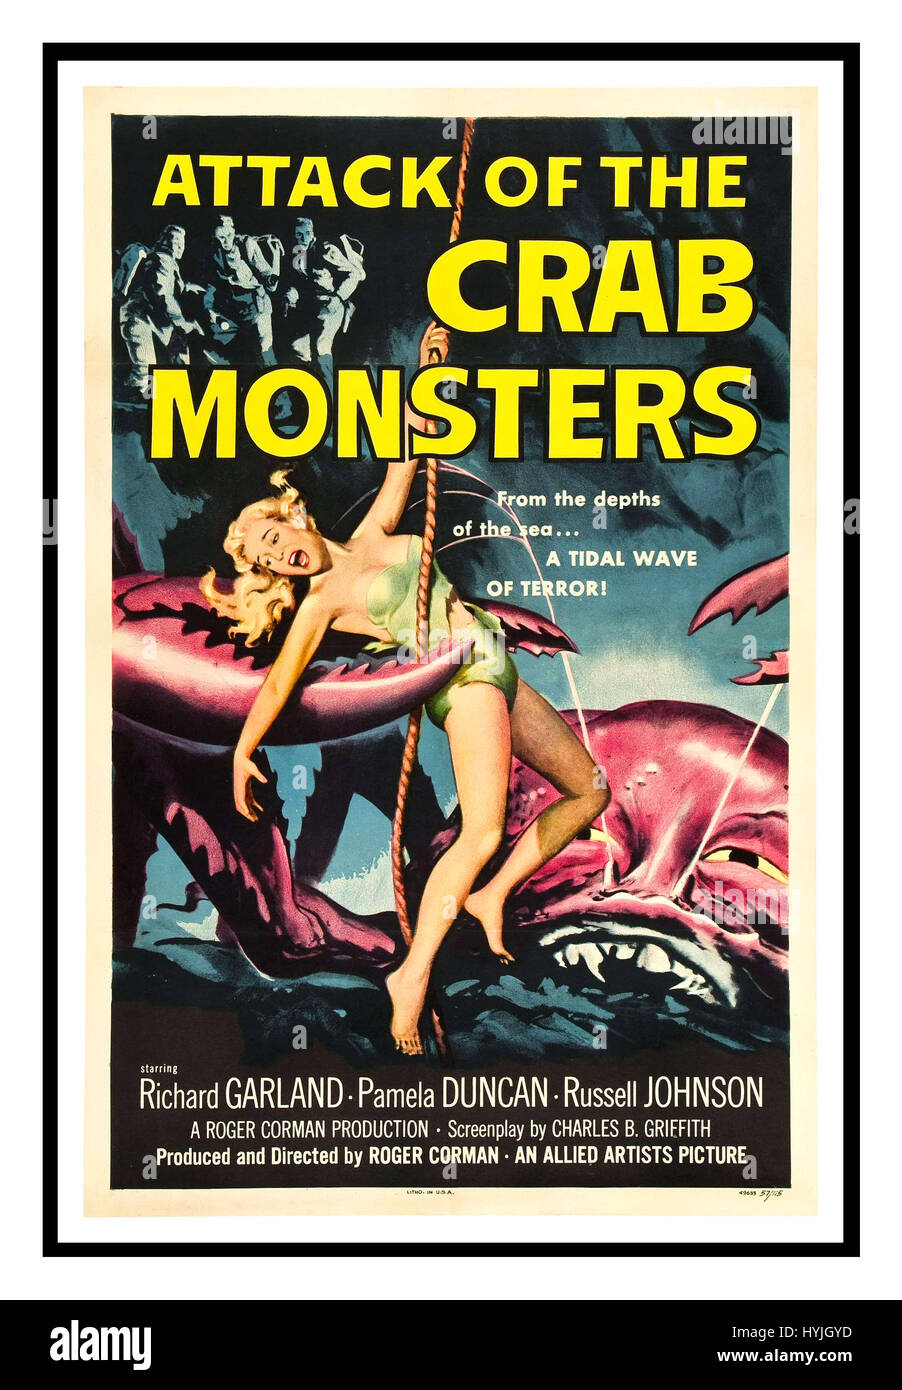 ATTACK OF THE CRAB MONSTERS Vintage Filmplakat wirbt für den Horror-Sci-Fi-Film von 1957 Attack of the Crab Monsters produziert und inszeniert von Roger Corman, mit Richard Garland, Pamela Duncan und Russell Johnson Stockfoto